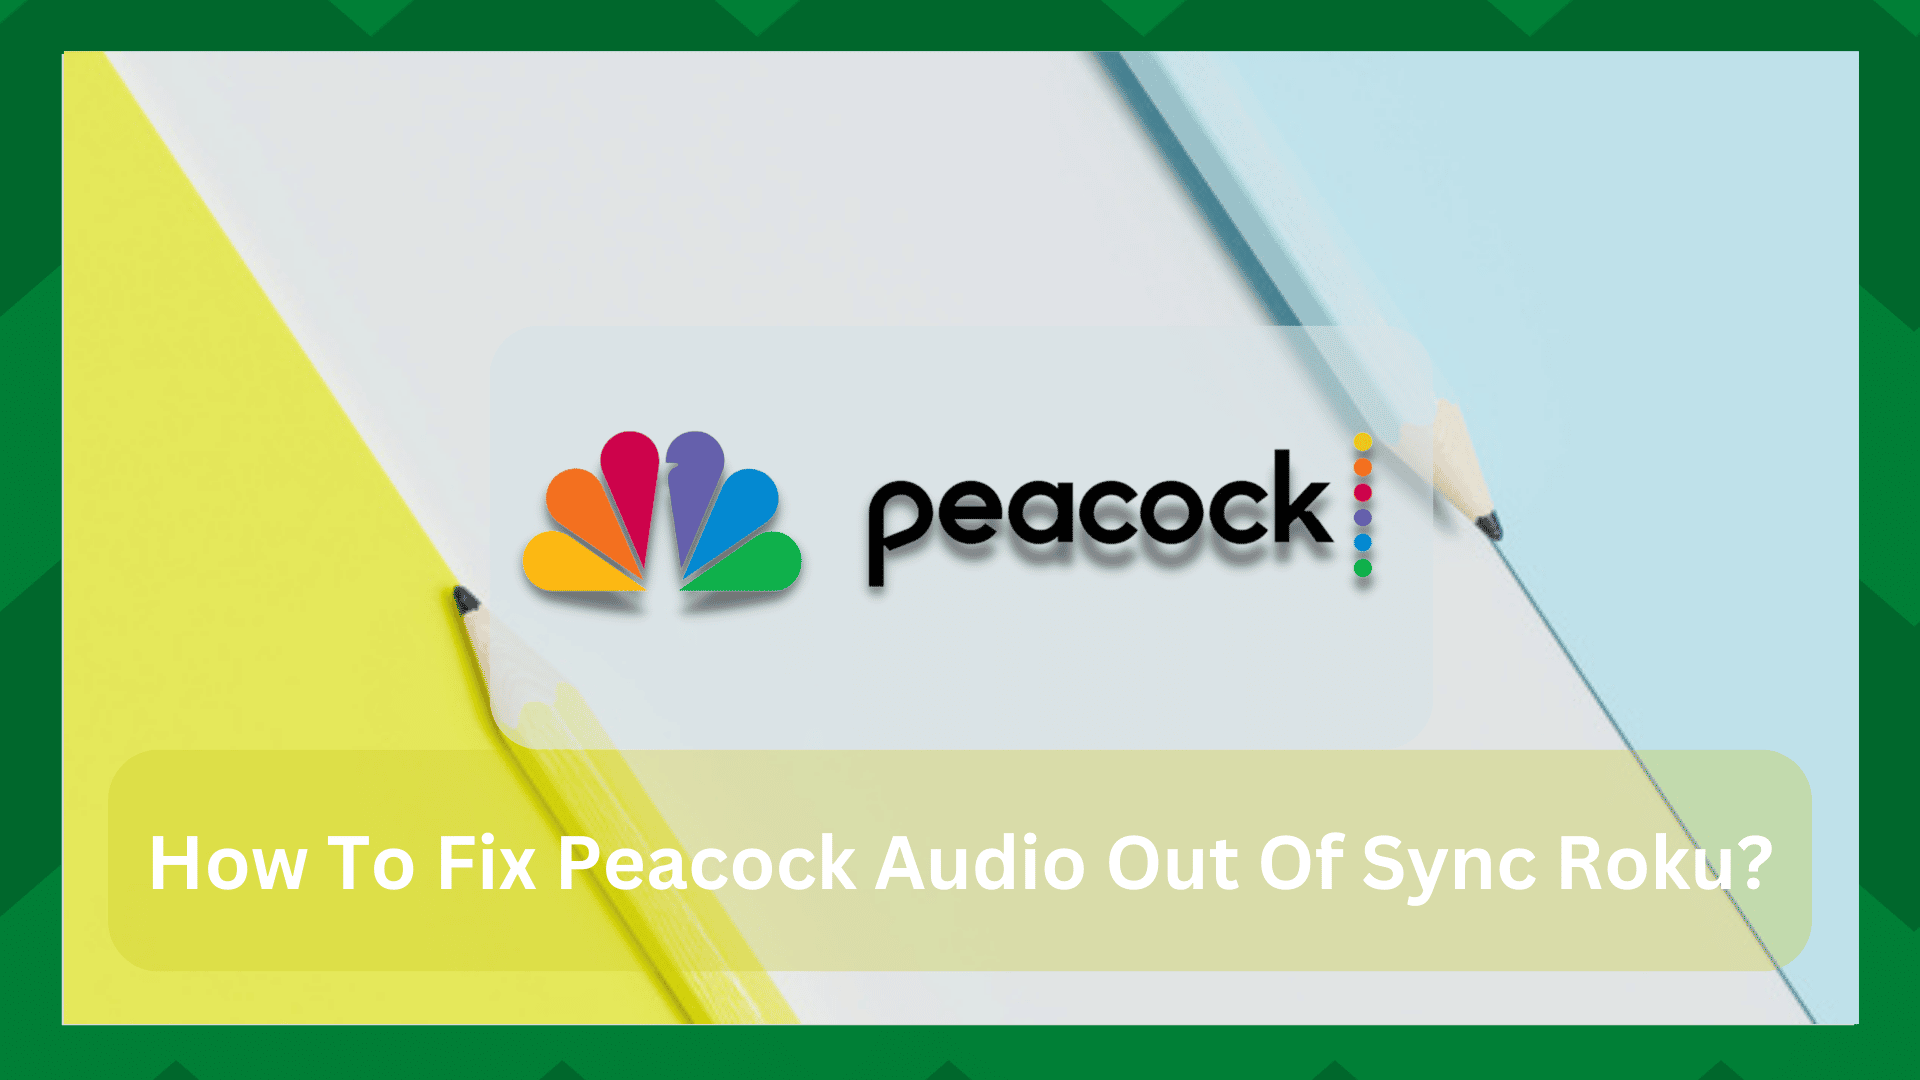 5 Szybkich rozwiązań dla Peacock Audio Out of Sync Roku